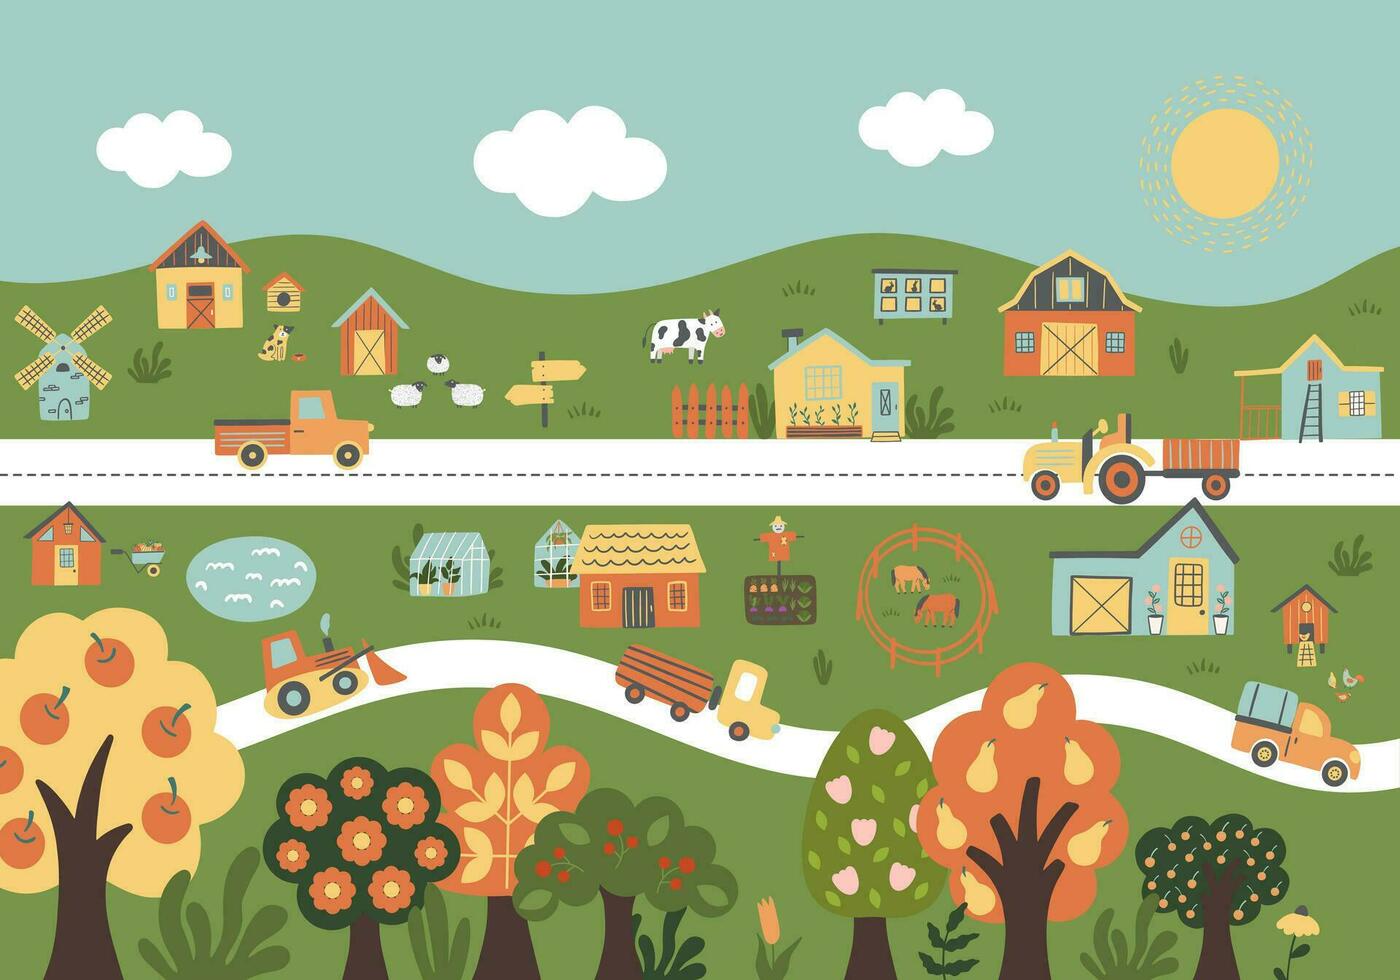 Bauernhof Mauer Poster mit Bauernhäuser, Hügel, Tiere, Garten, Bäume, Auto, Hähnchen coop. vektor